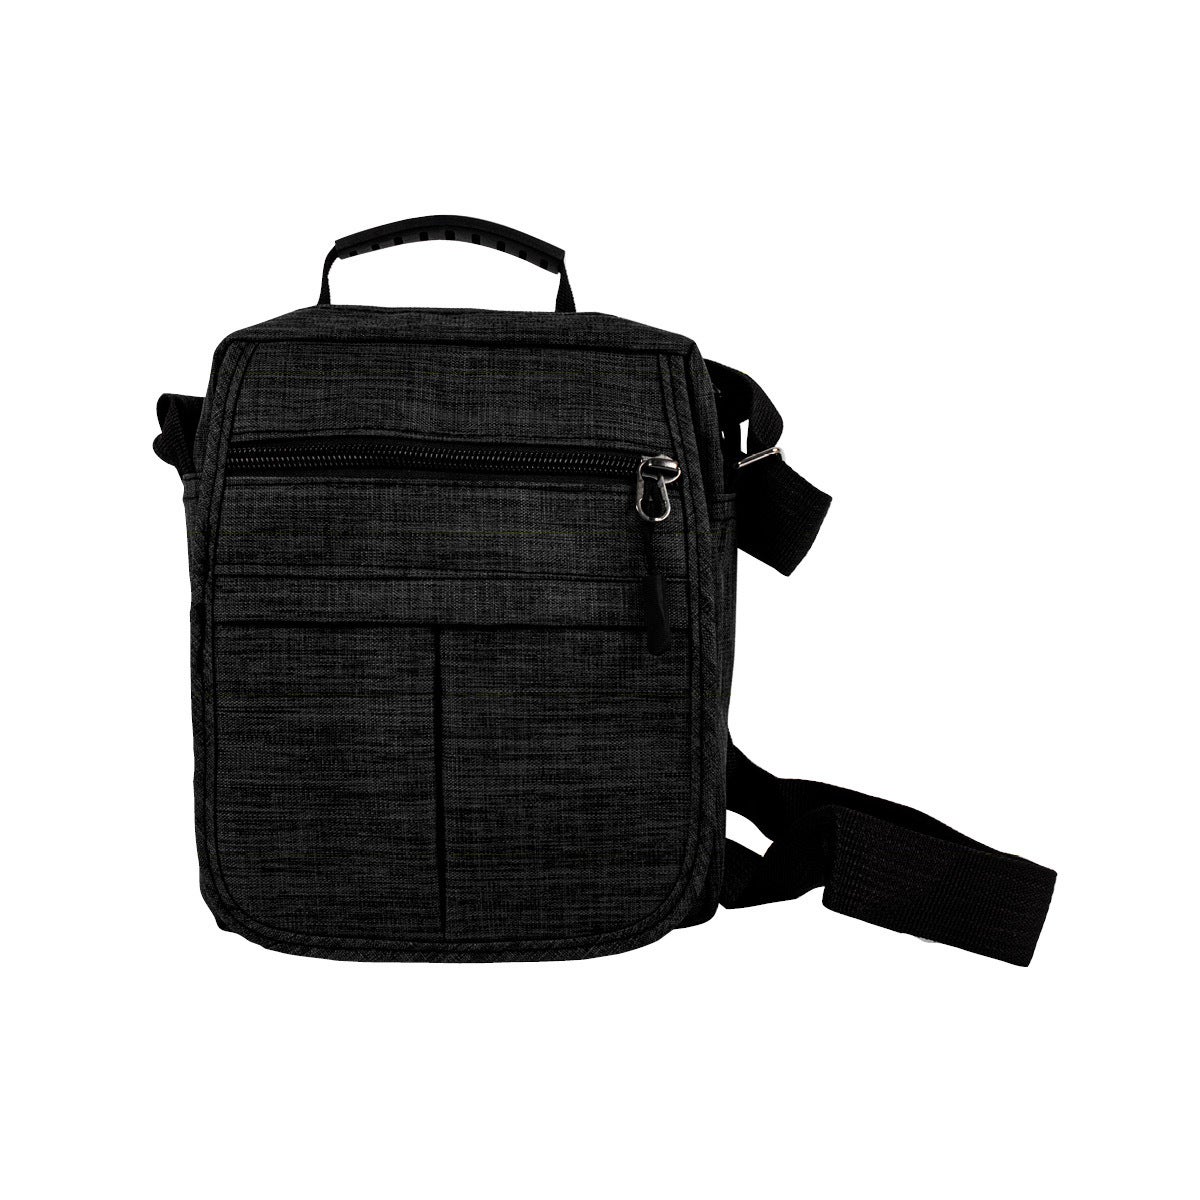 Swosh Bag Sling Cross Body Adjustable Strap Multiple Pockets 3 Zip Design